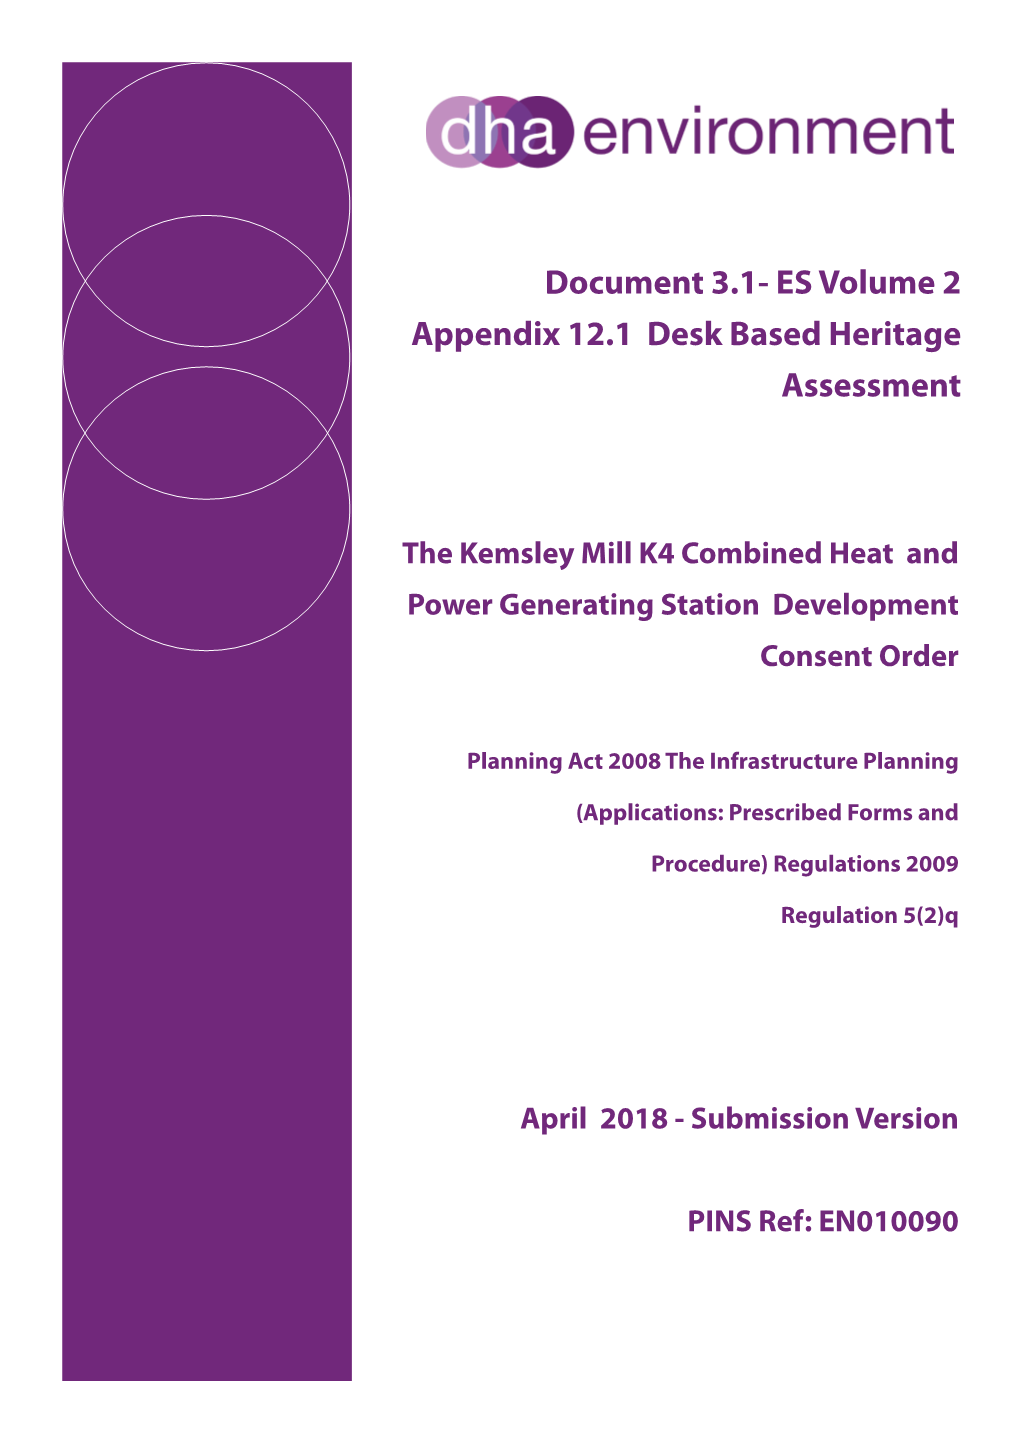 3.1- ES Volume 2 Appendix 12.1 Desk Based Heritage Assessment